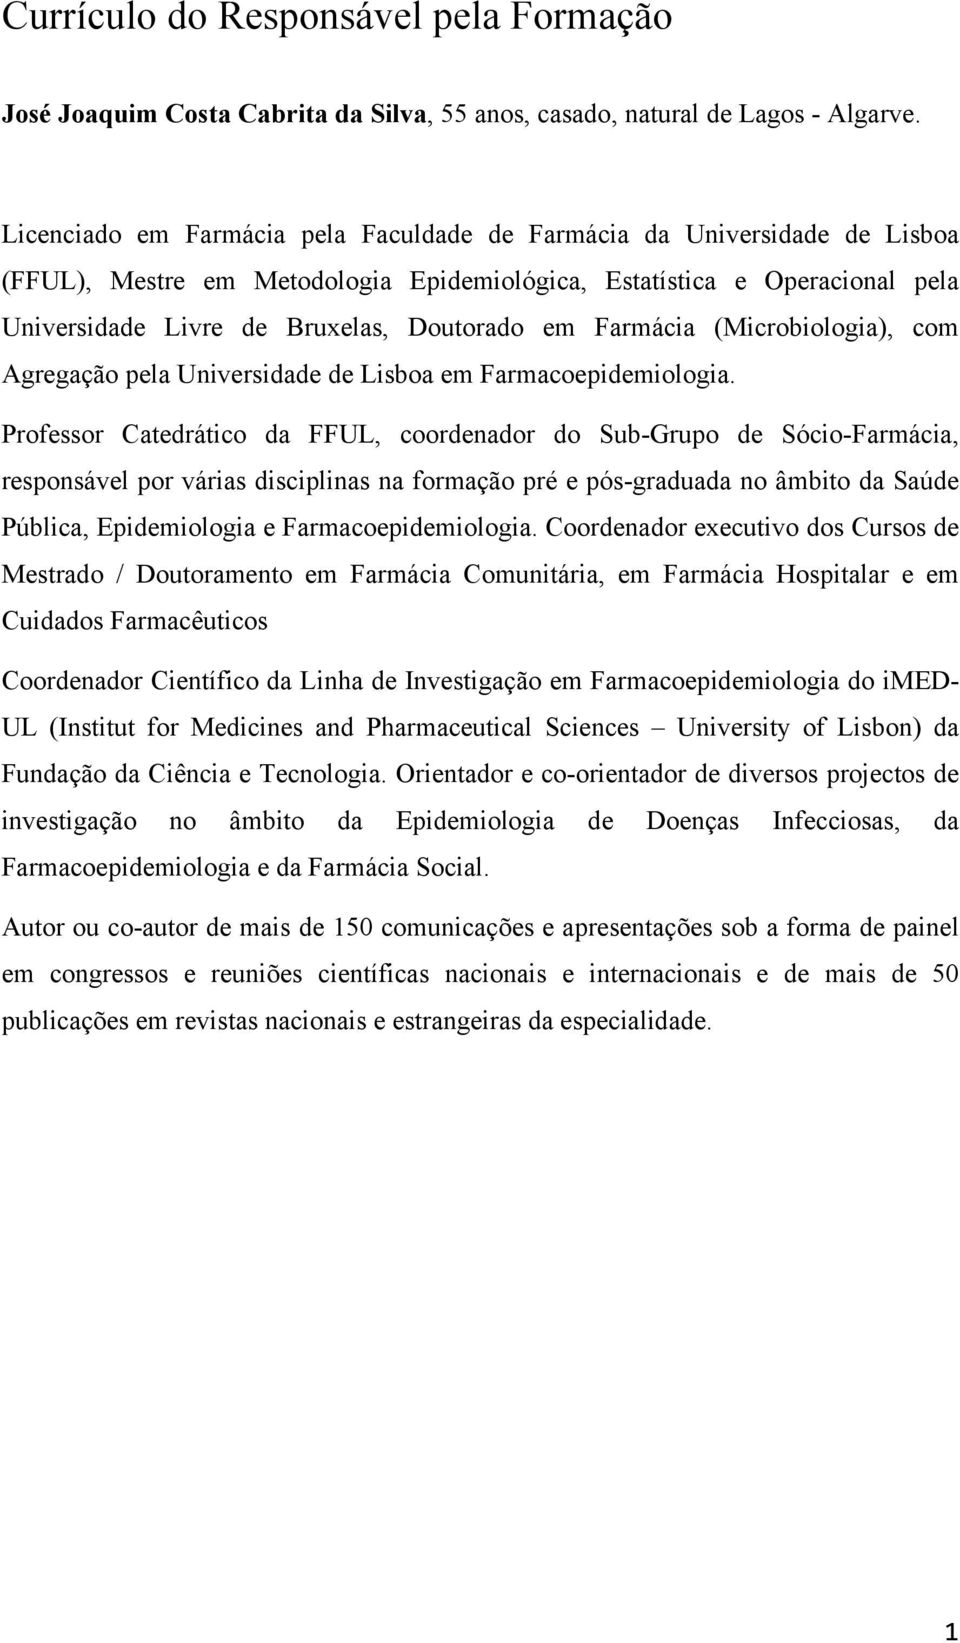 Farmácia (Microbiologia), com Agregação pela Universidade de Lisboa em Farmacoepidemiologia.